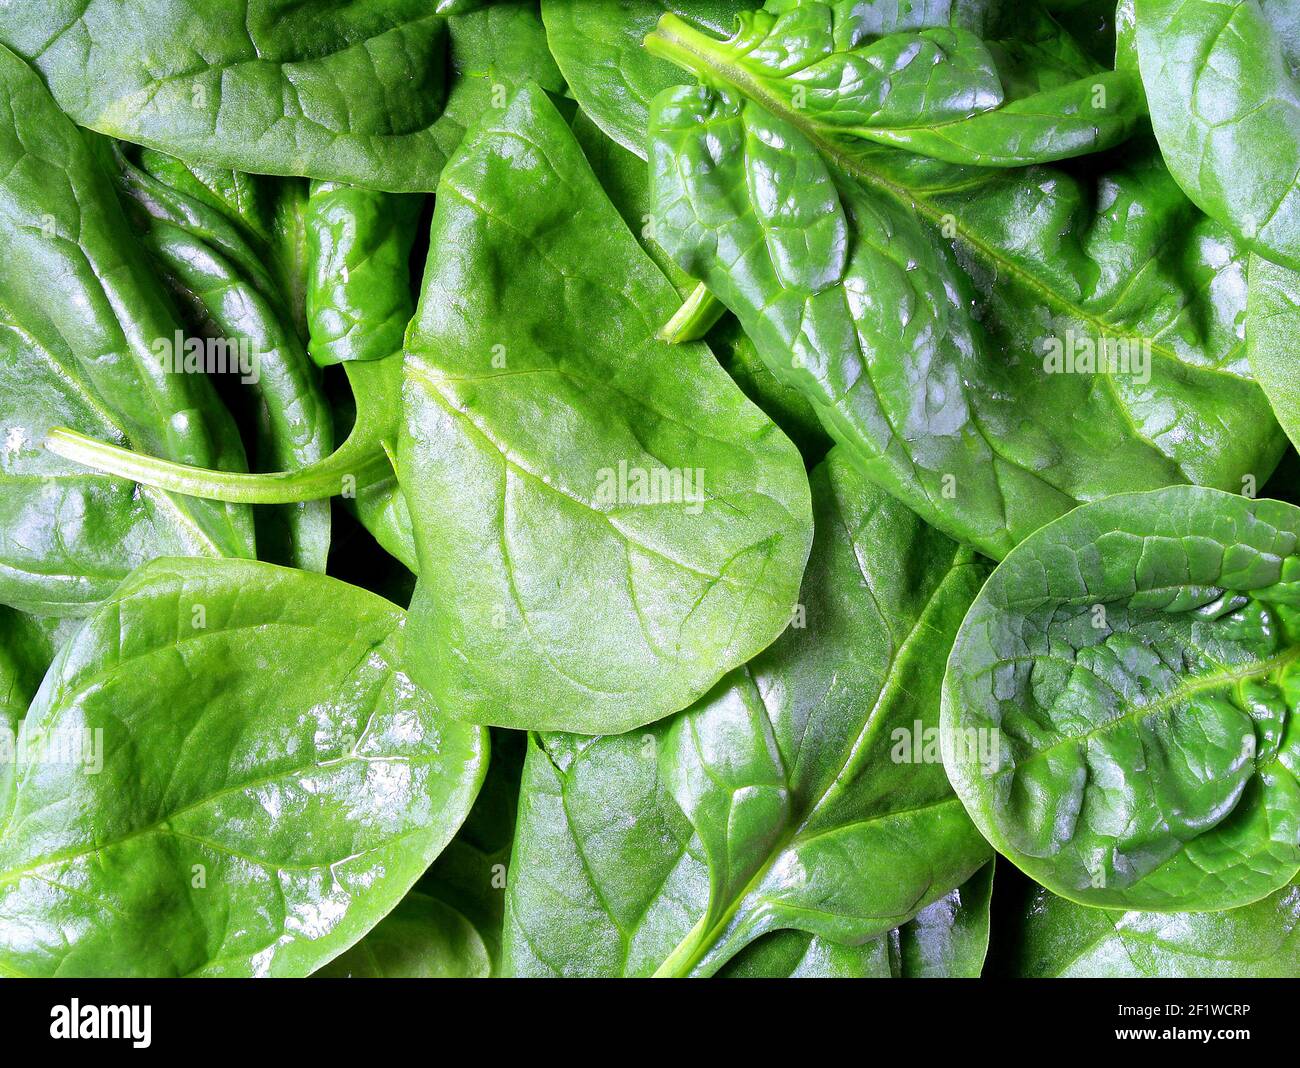 Immagine ravvicinata di foglie di spinaci fresche e croccanti Foto Stock